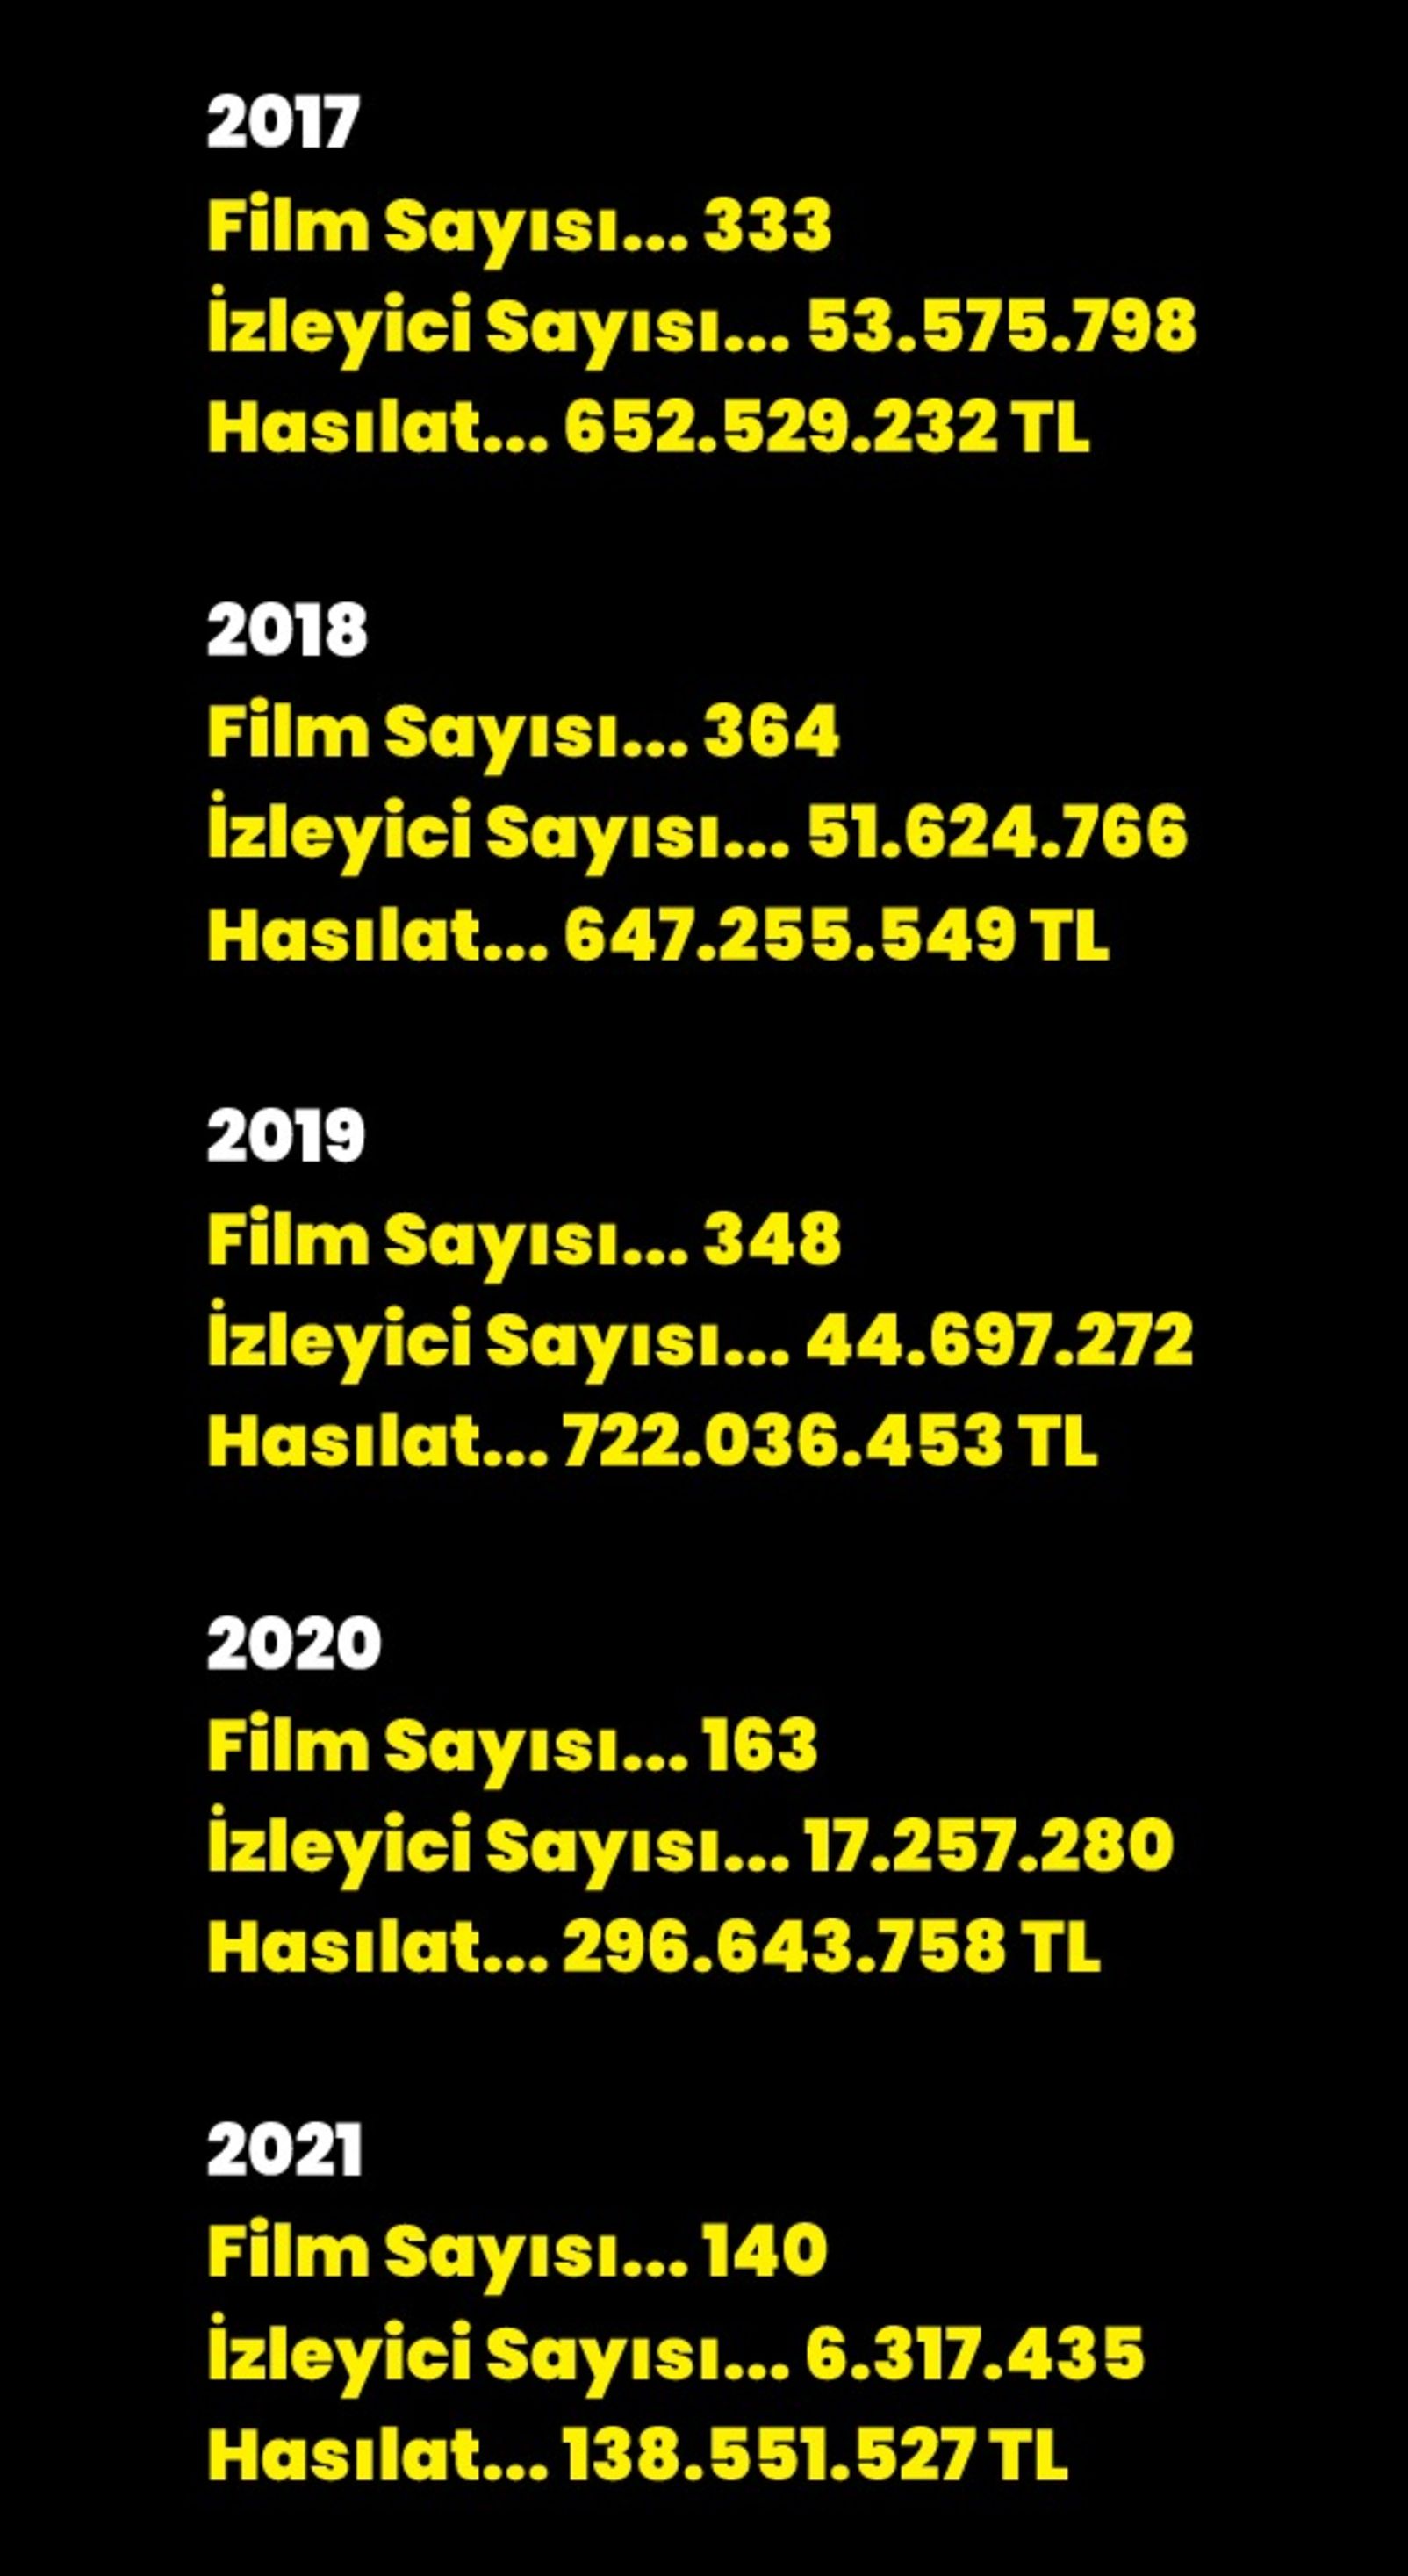 Sinemalarda son 5 yılın izleyici sayıları ve hasılatları 